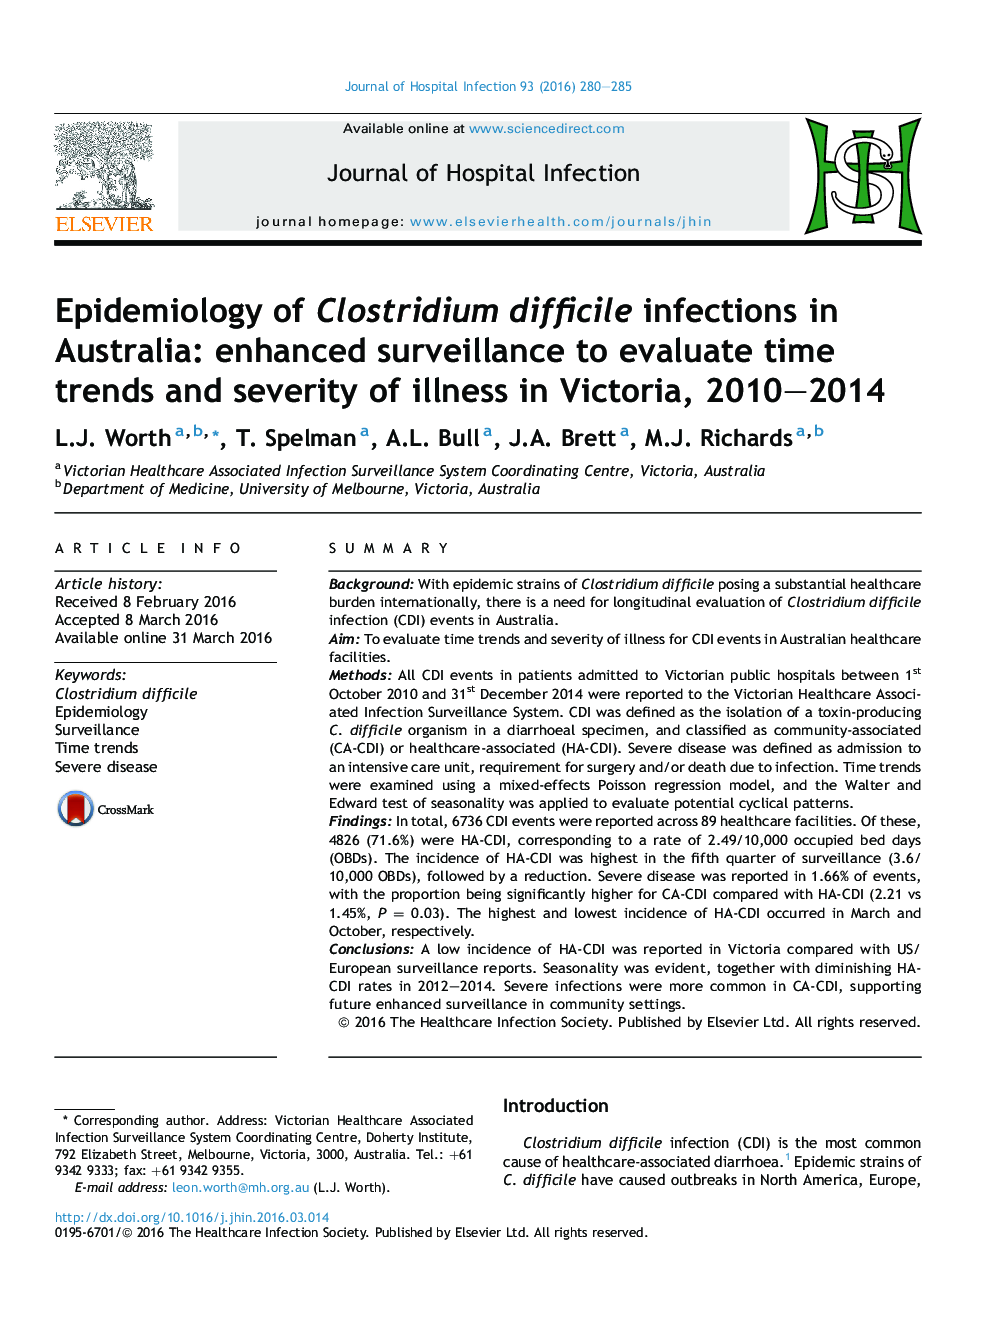 اپیدمیولوژی عفونت های کلستریدیوم دچار آسیب در استرالیا: افزایش نظارت برای ارزیابی روند زمان و شدت بیماری در ویکتوریا، 2010، 2014 